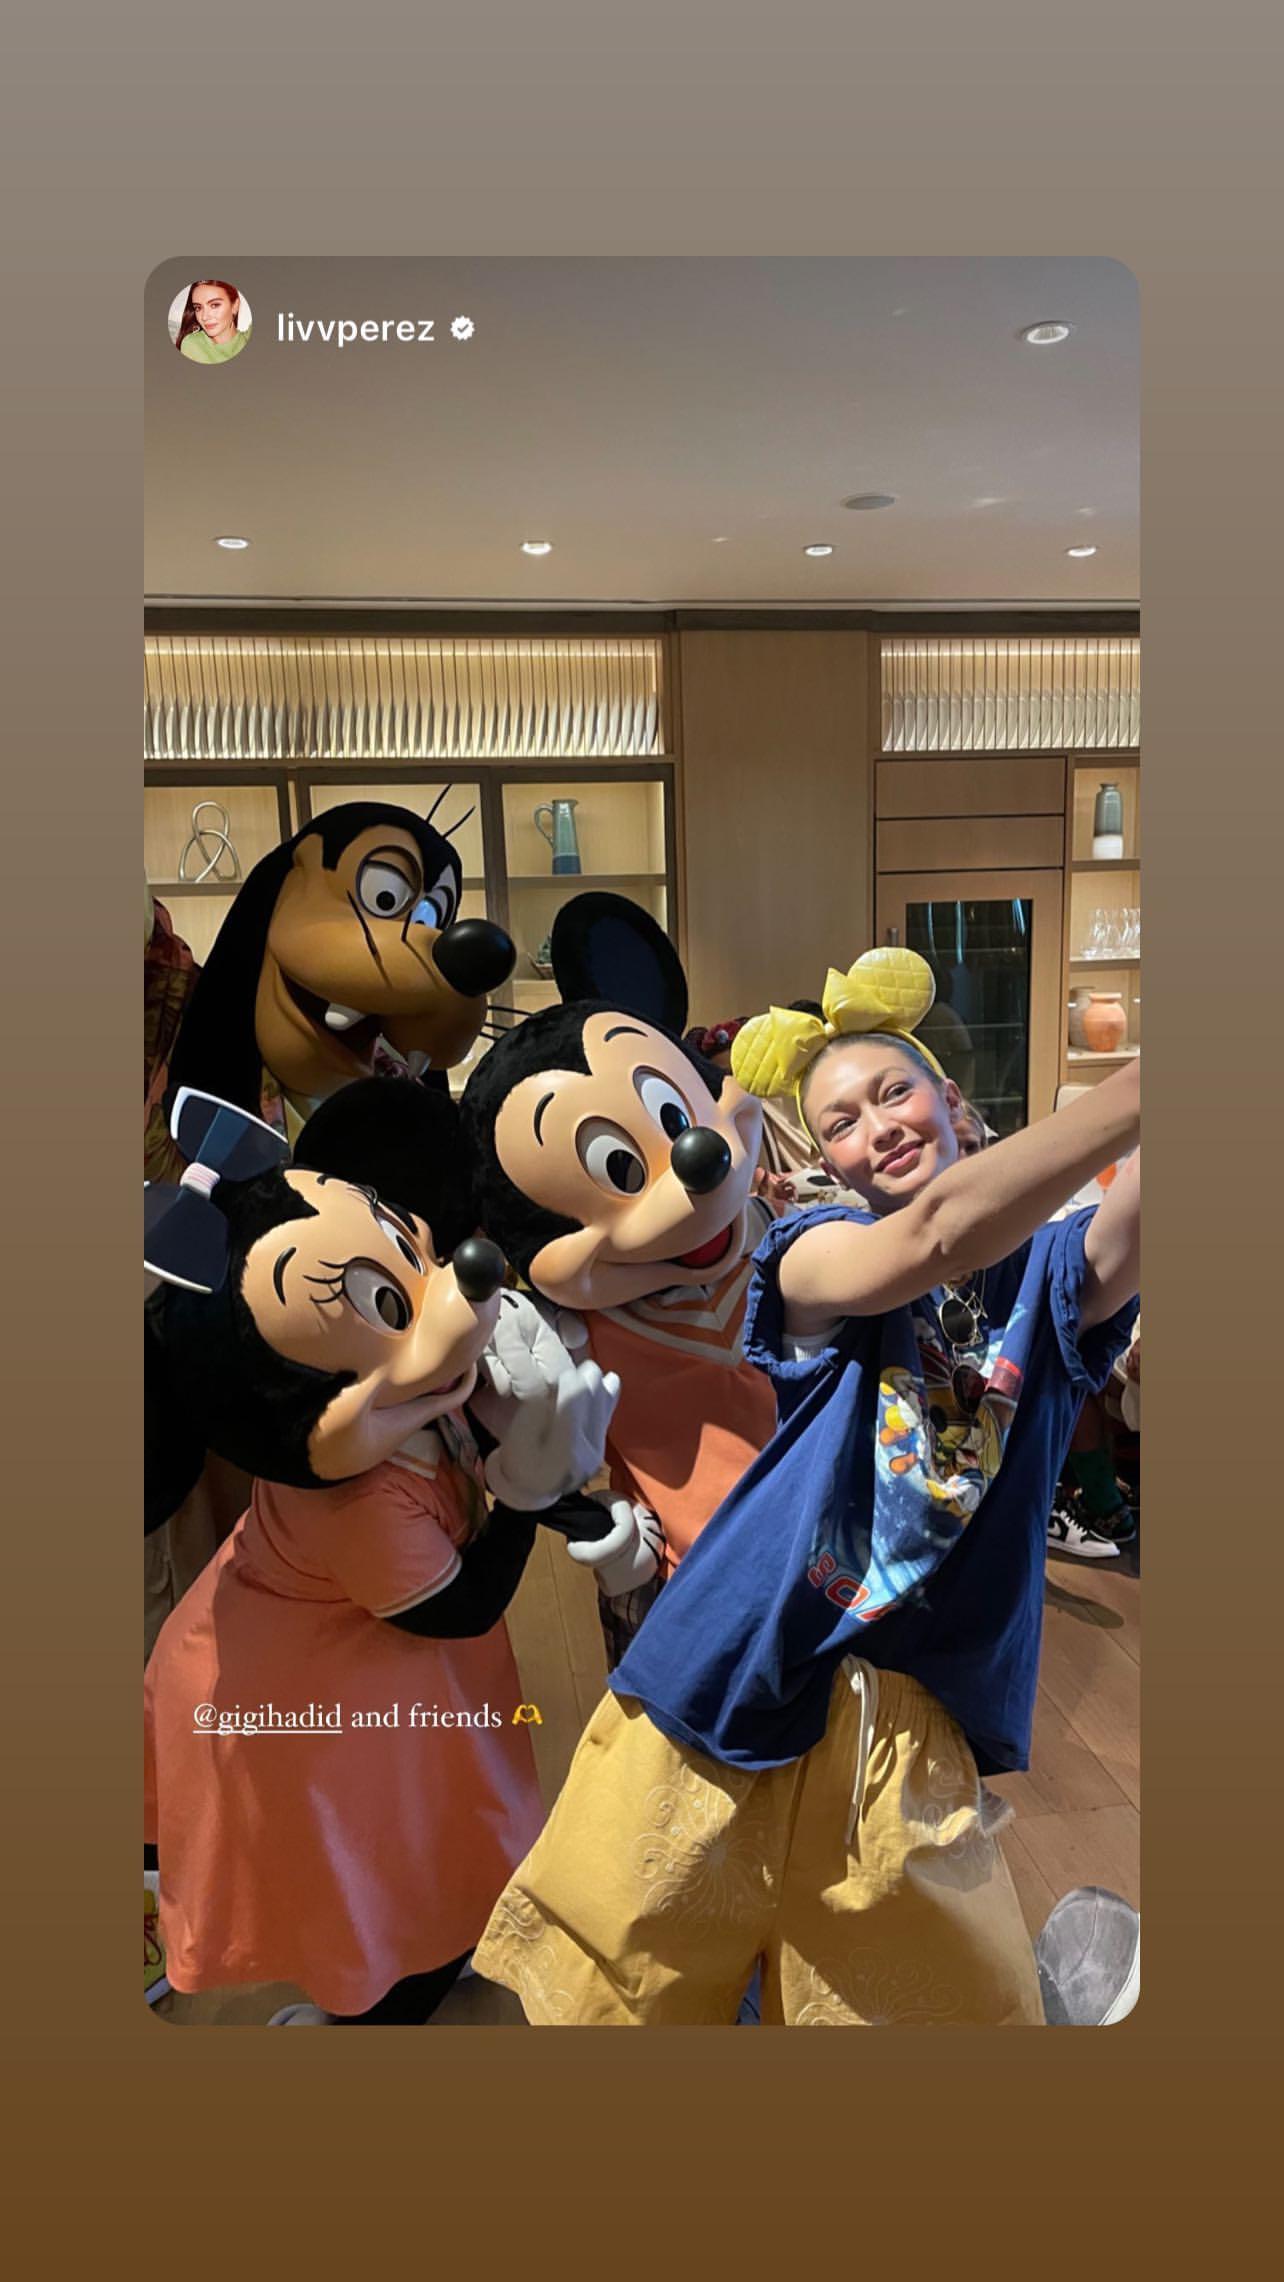 Gigi Hadid Morphs Into Singing Disney Princess For Birthday Wish